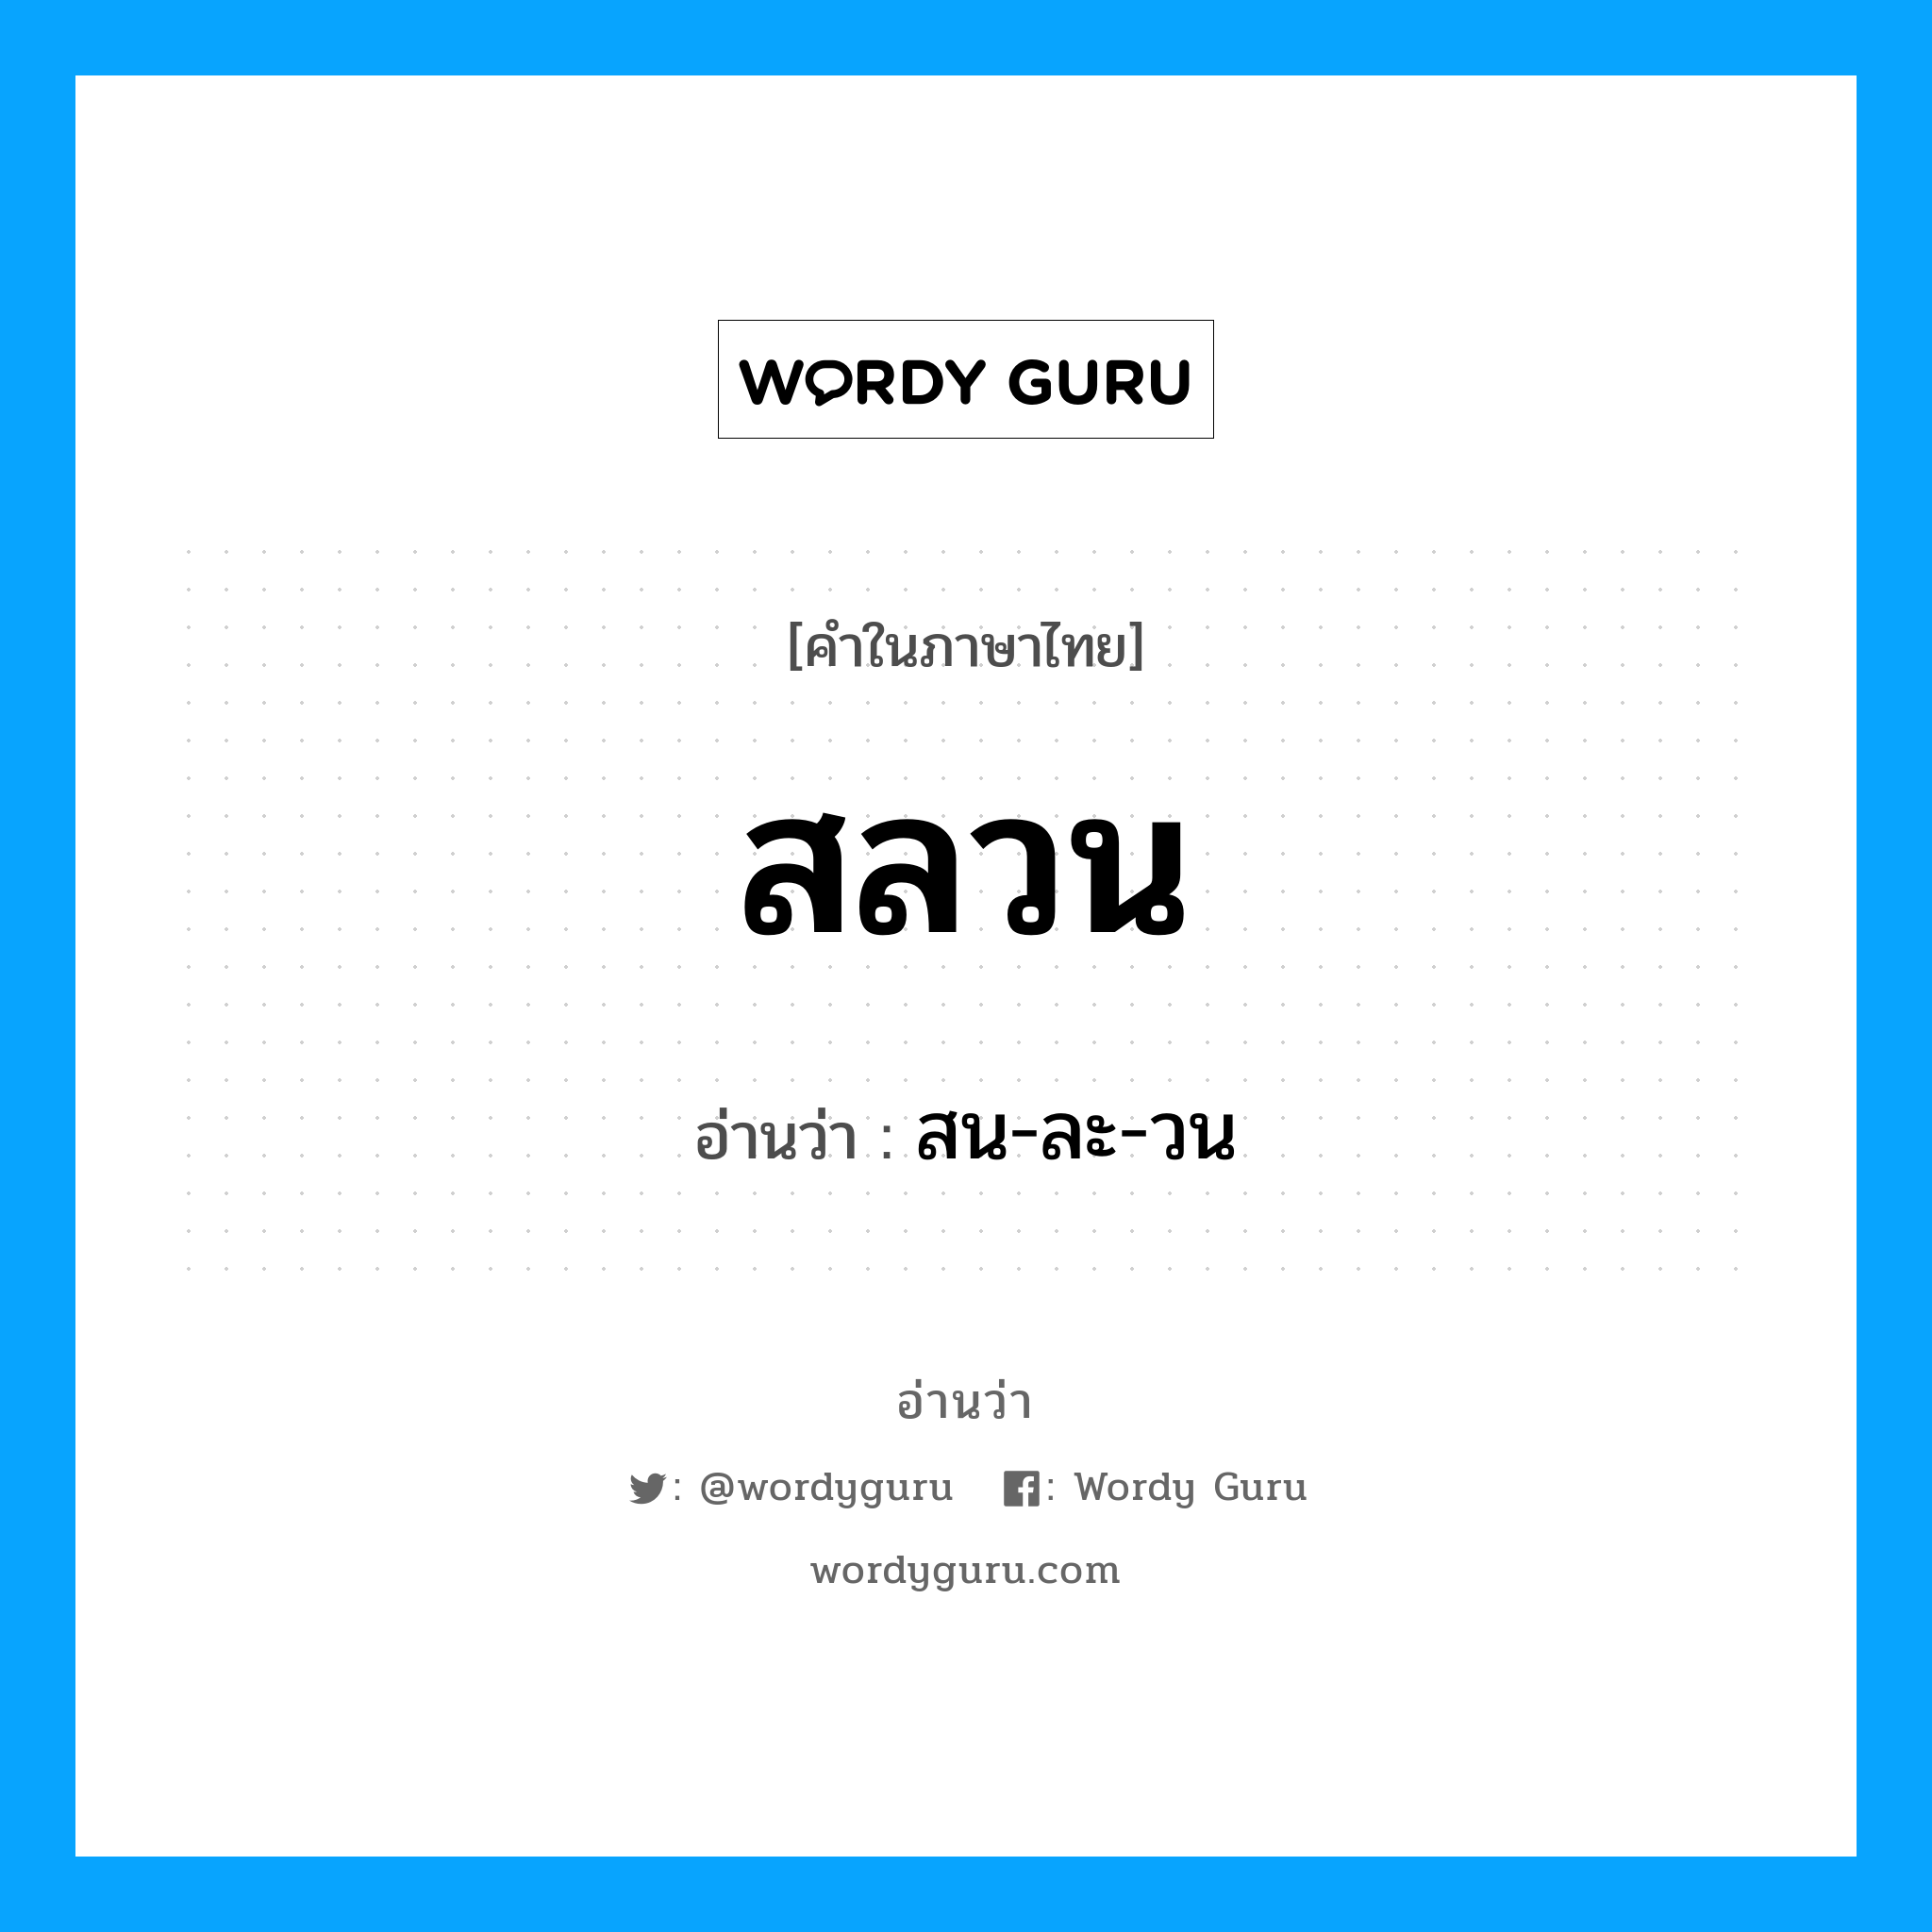 สน-ละ-วน เป็นคำอ่านของคำไหน?, คำในภาษาไทย สน-ละ-วน อ่านว่า สลวน